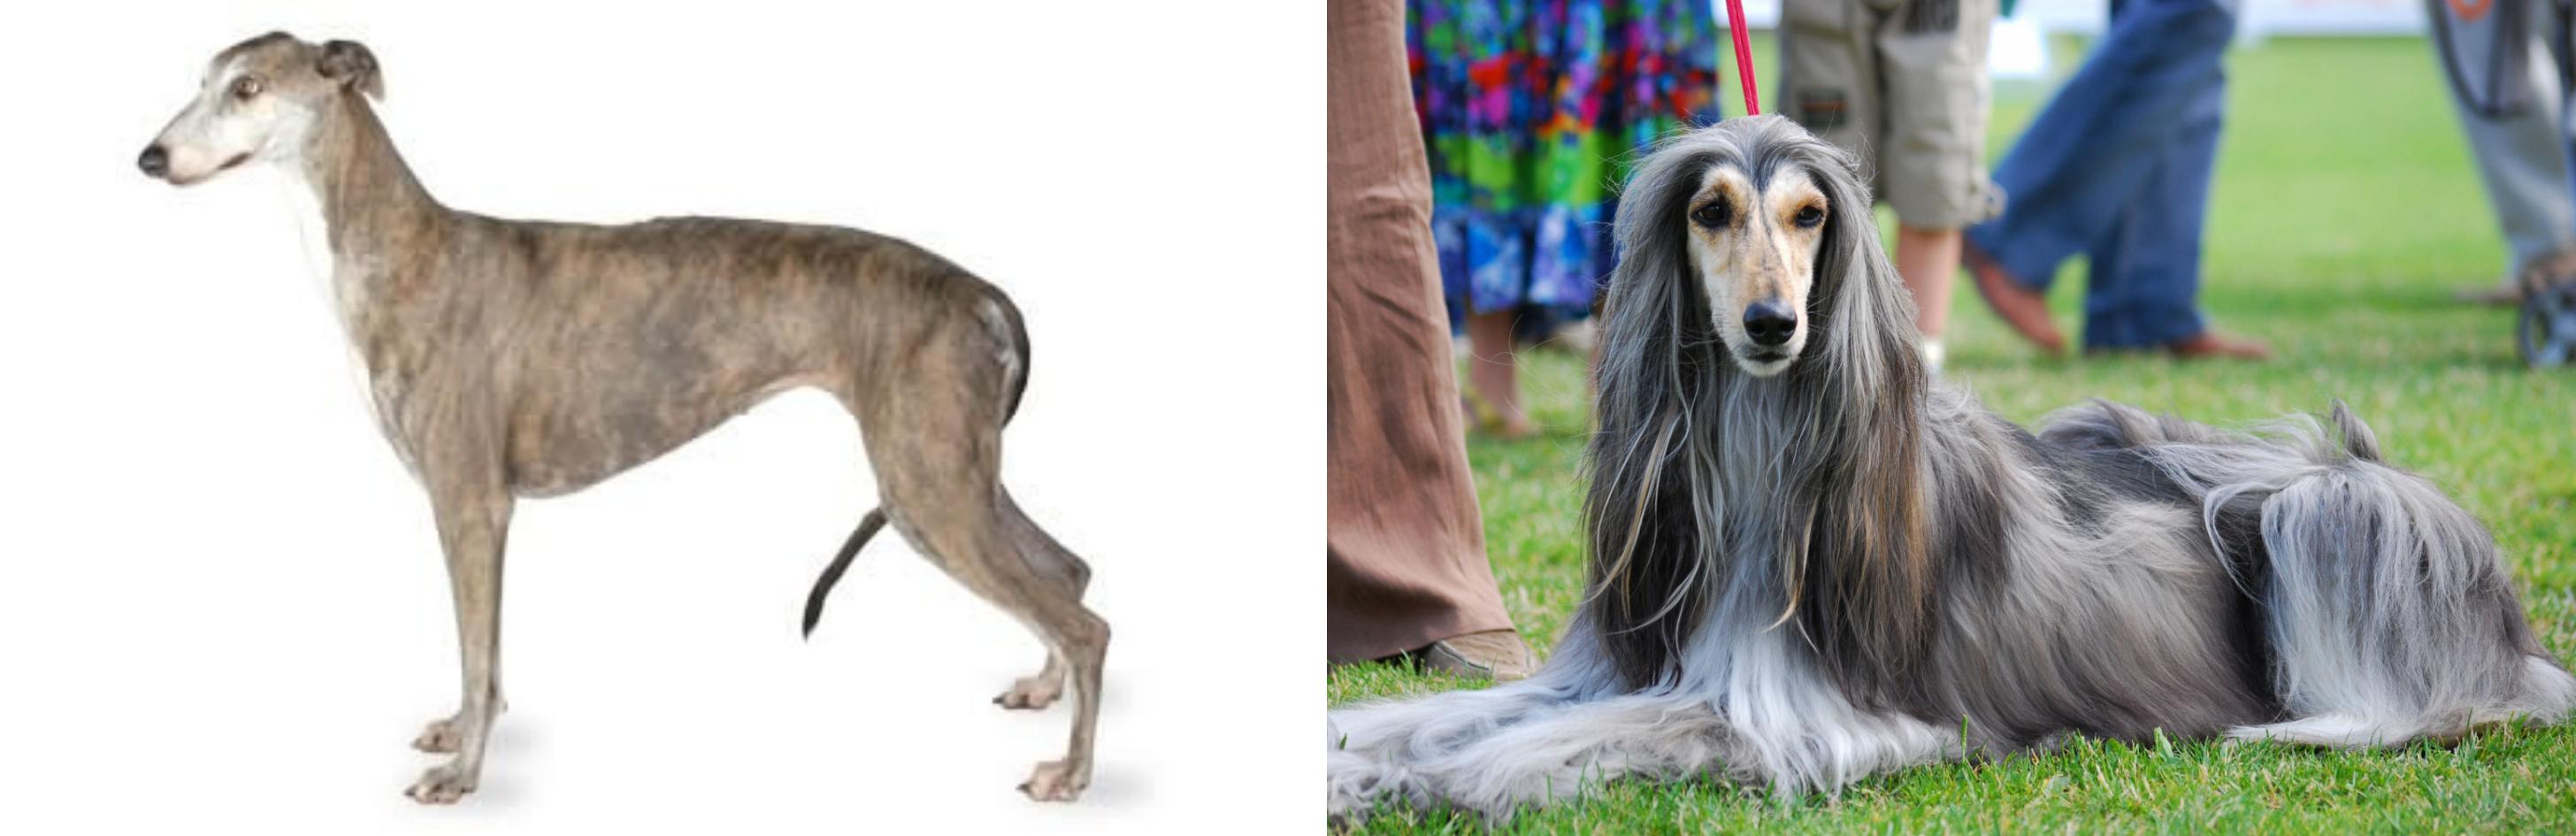 greyhound hound